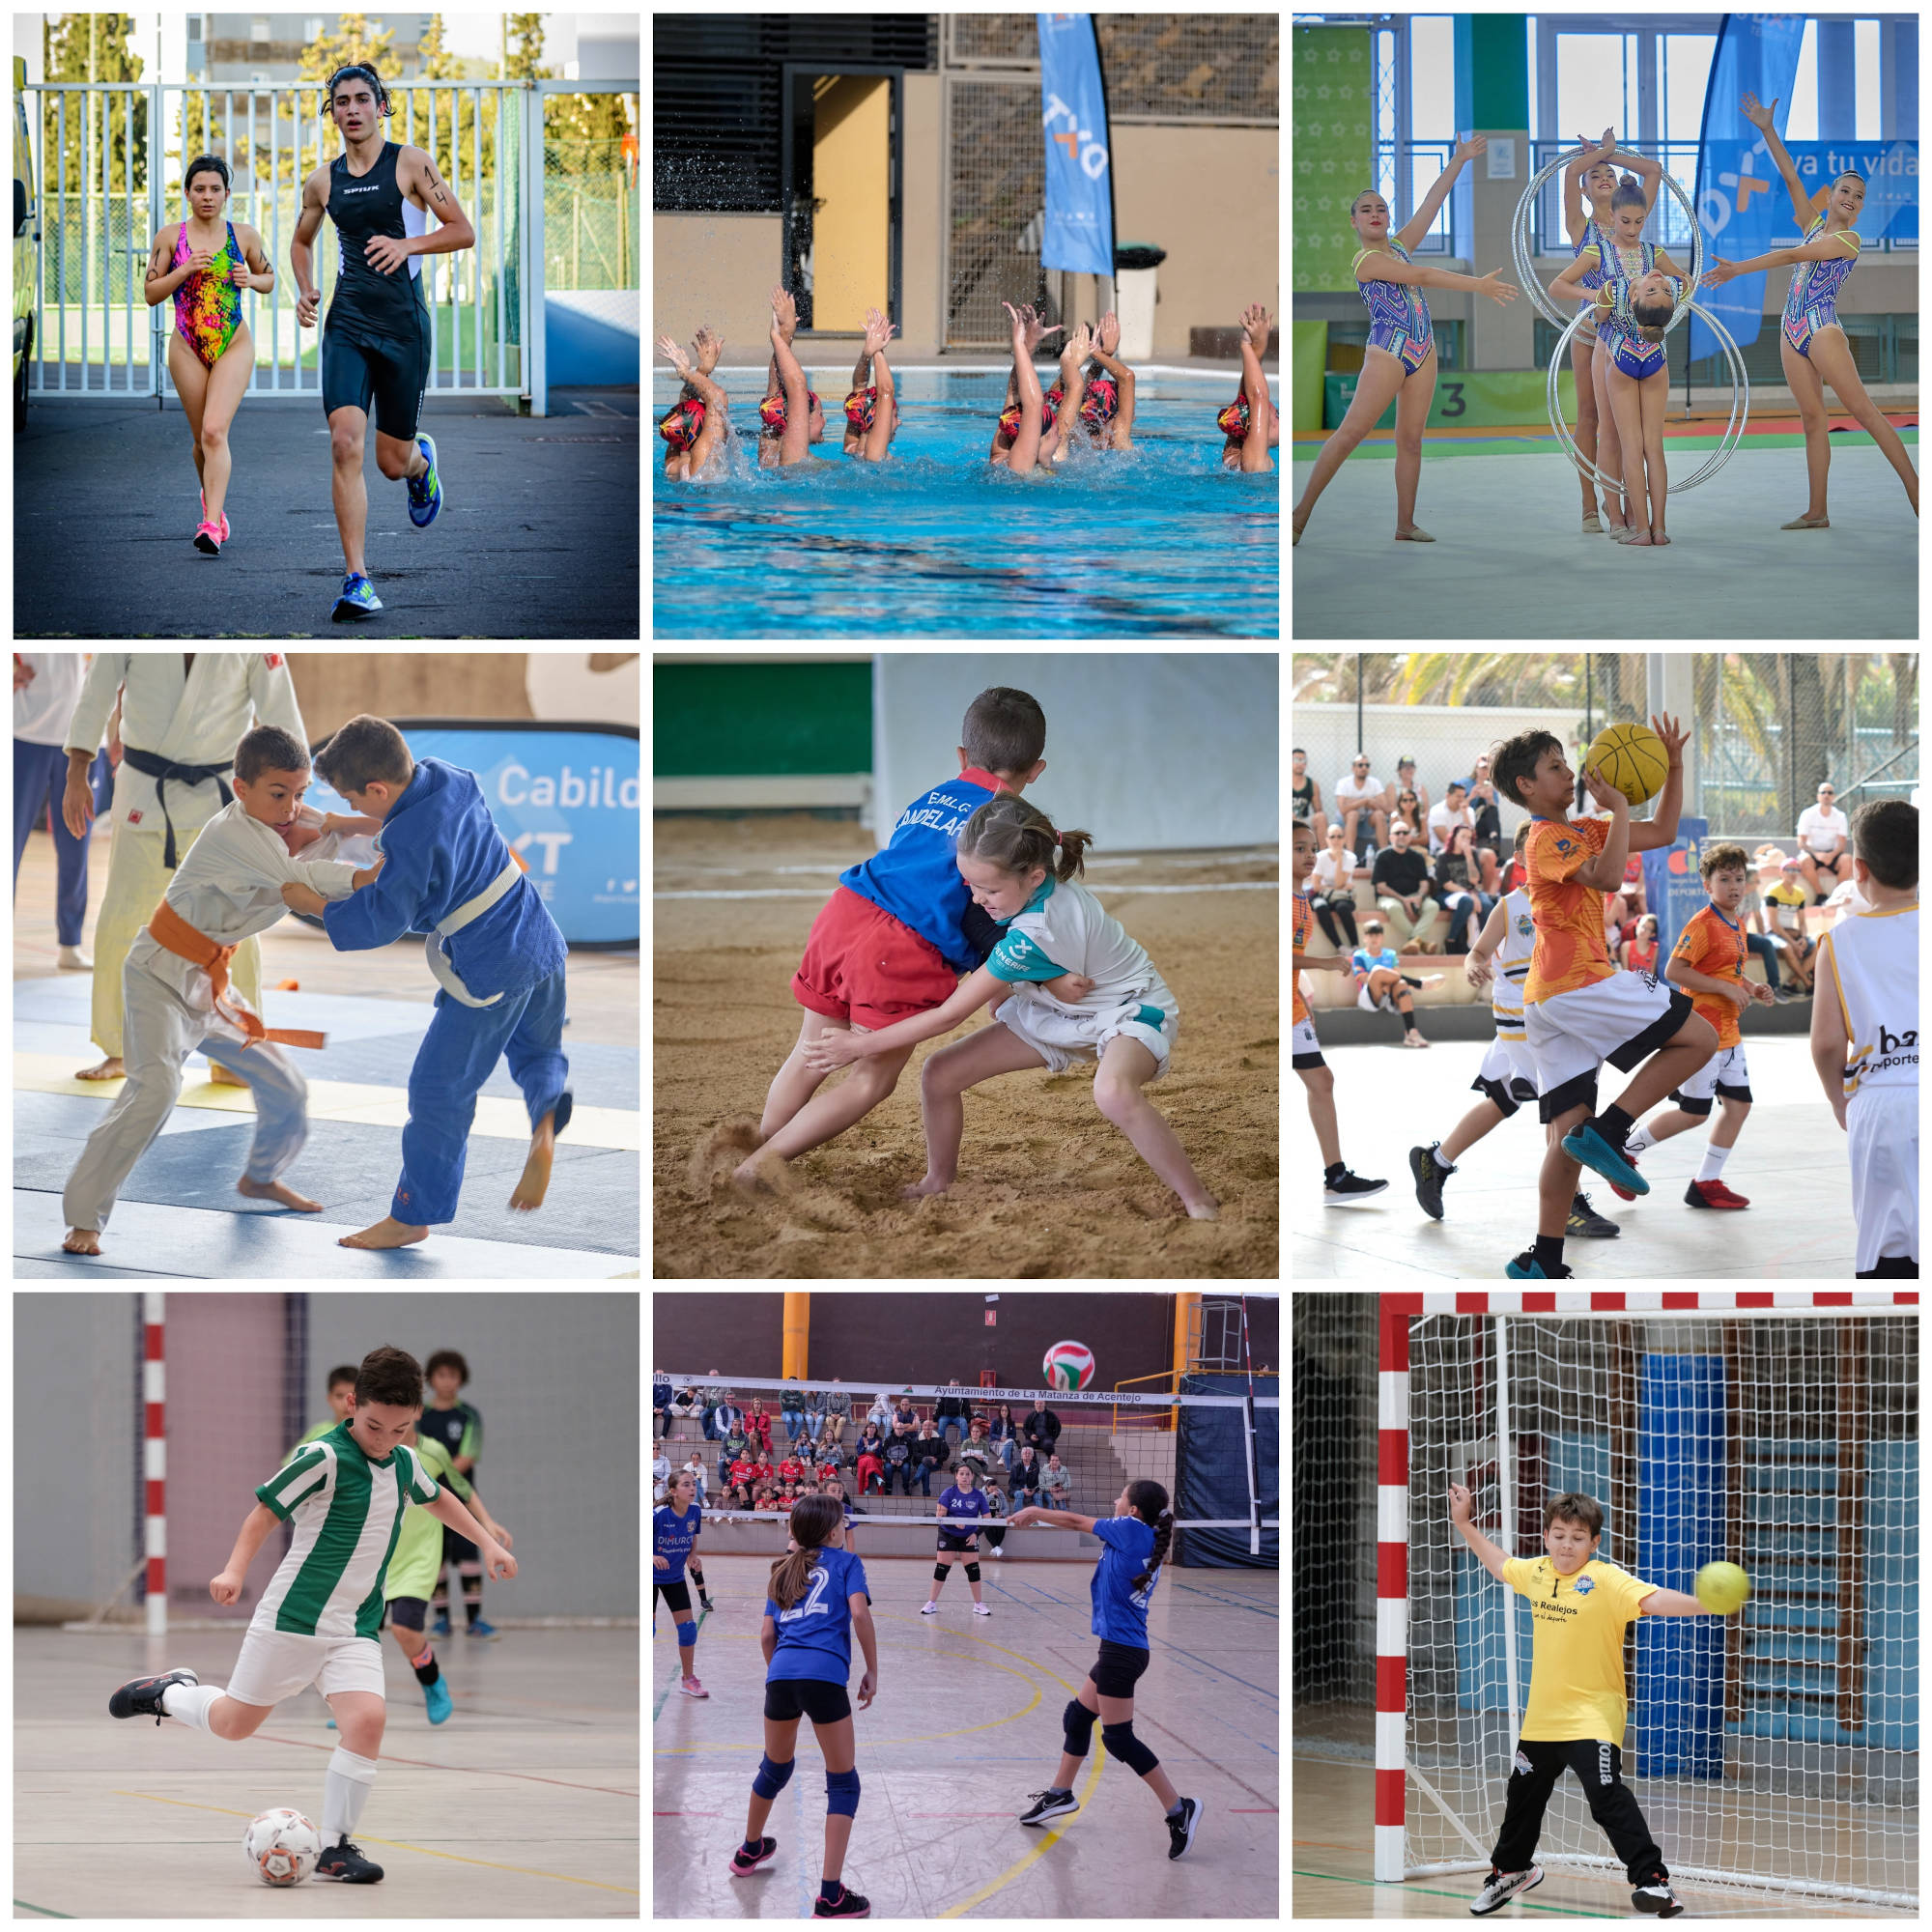 Nueve disciplinas protagonizan este sábado 20 de abril la actividad deportiva de los Juegos Cabildo